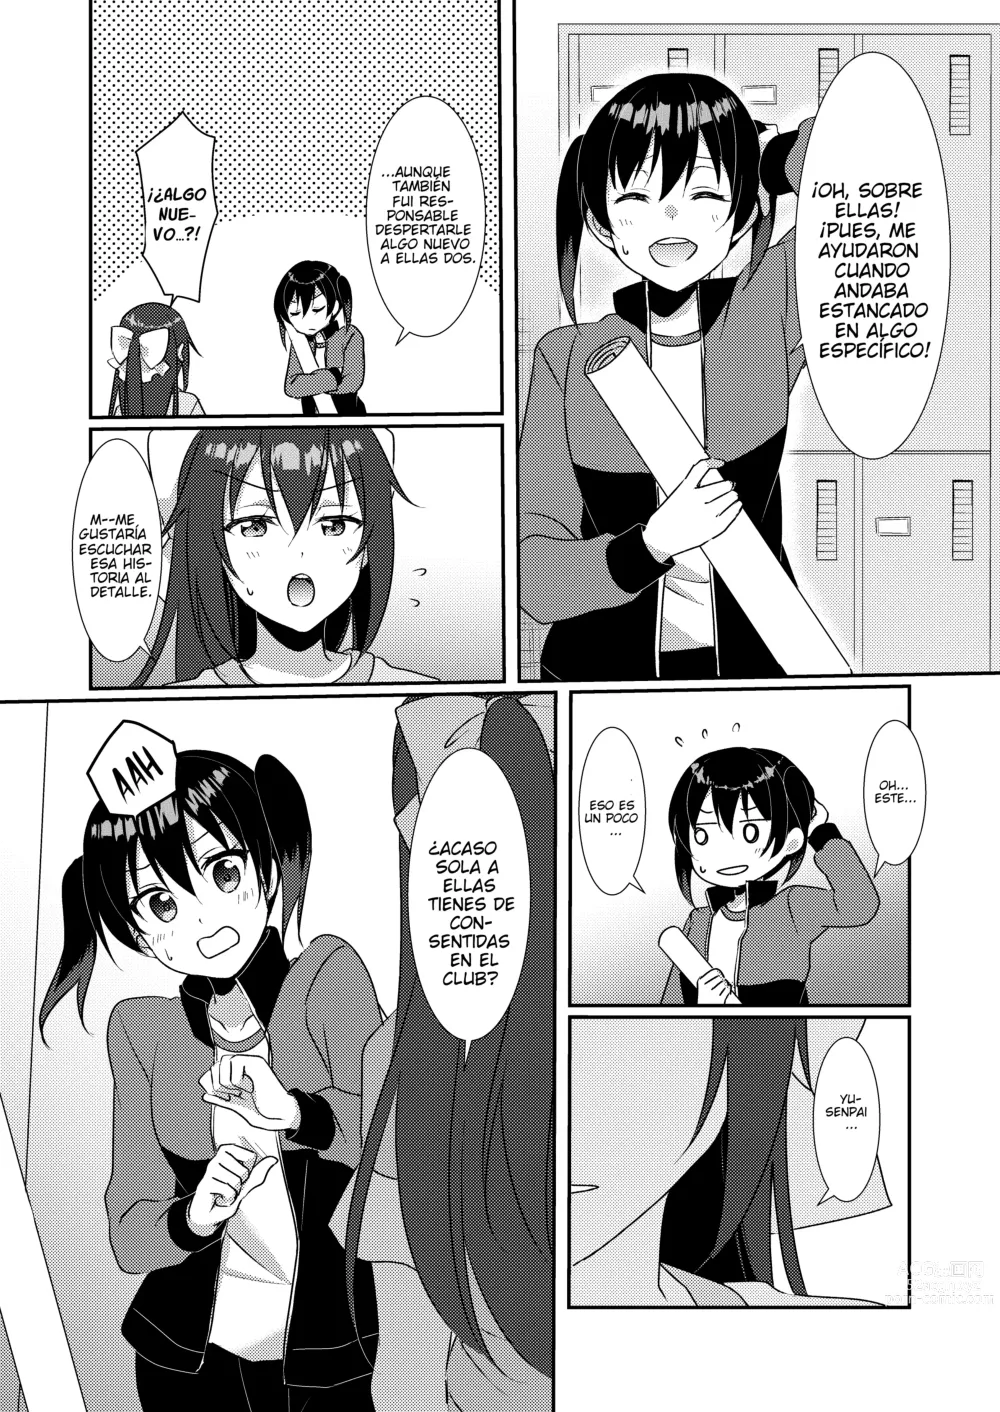 Page 3 of doujinshi Relato Yuristico: SAKURA